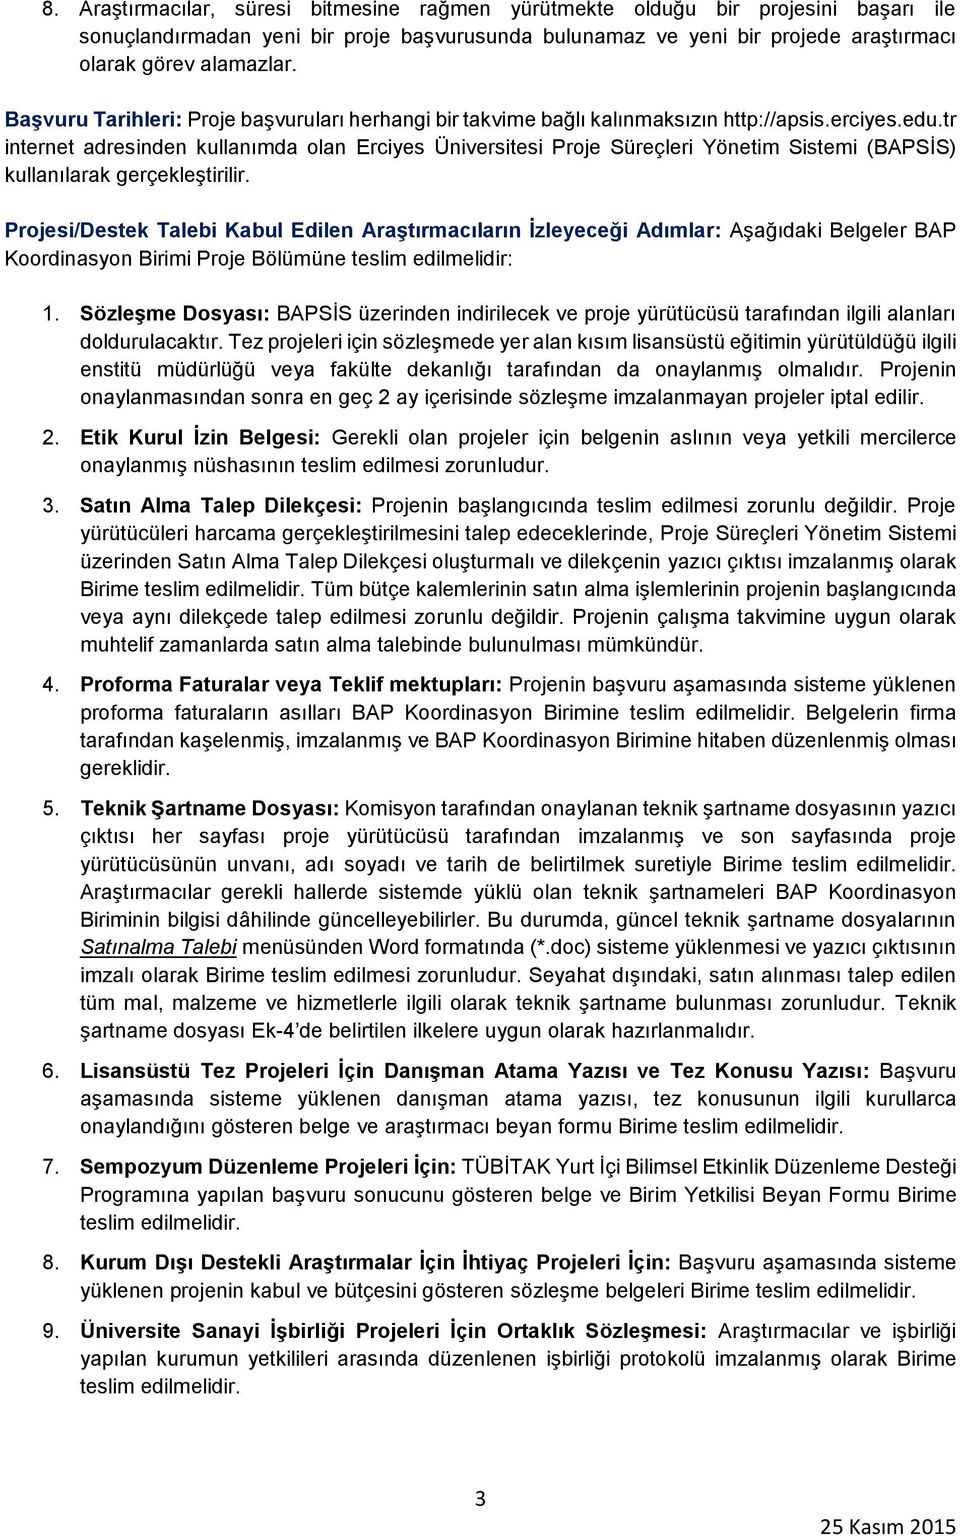 tr internet adresinden kullanımda olan Erciyes Üniversitesi Proje Süreçleri Yönetim Sistemi (BAPSİS) kullanılarak gerçekleştirilir.